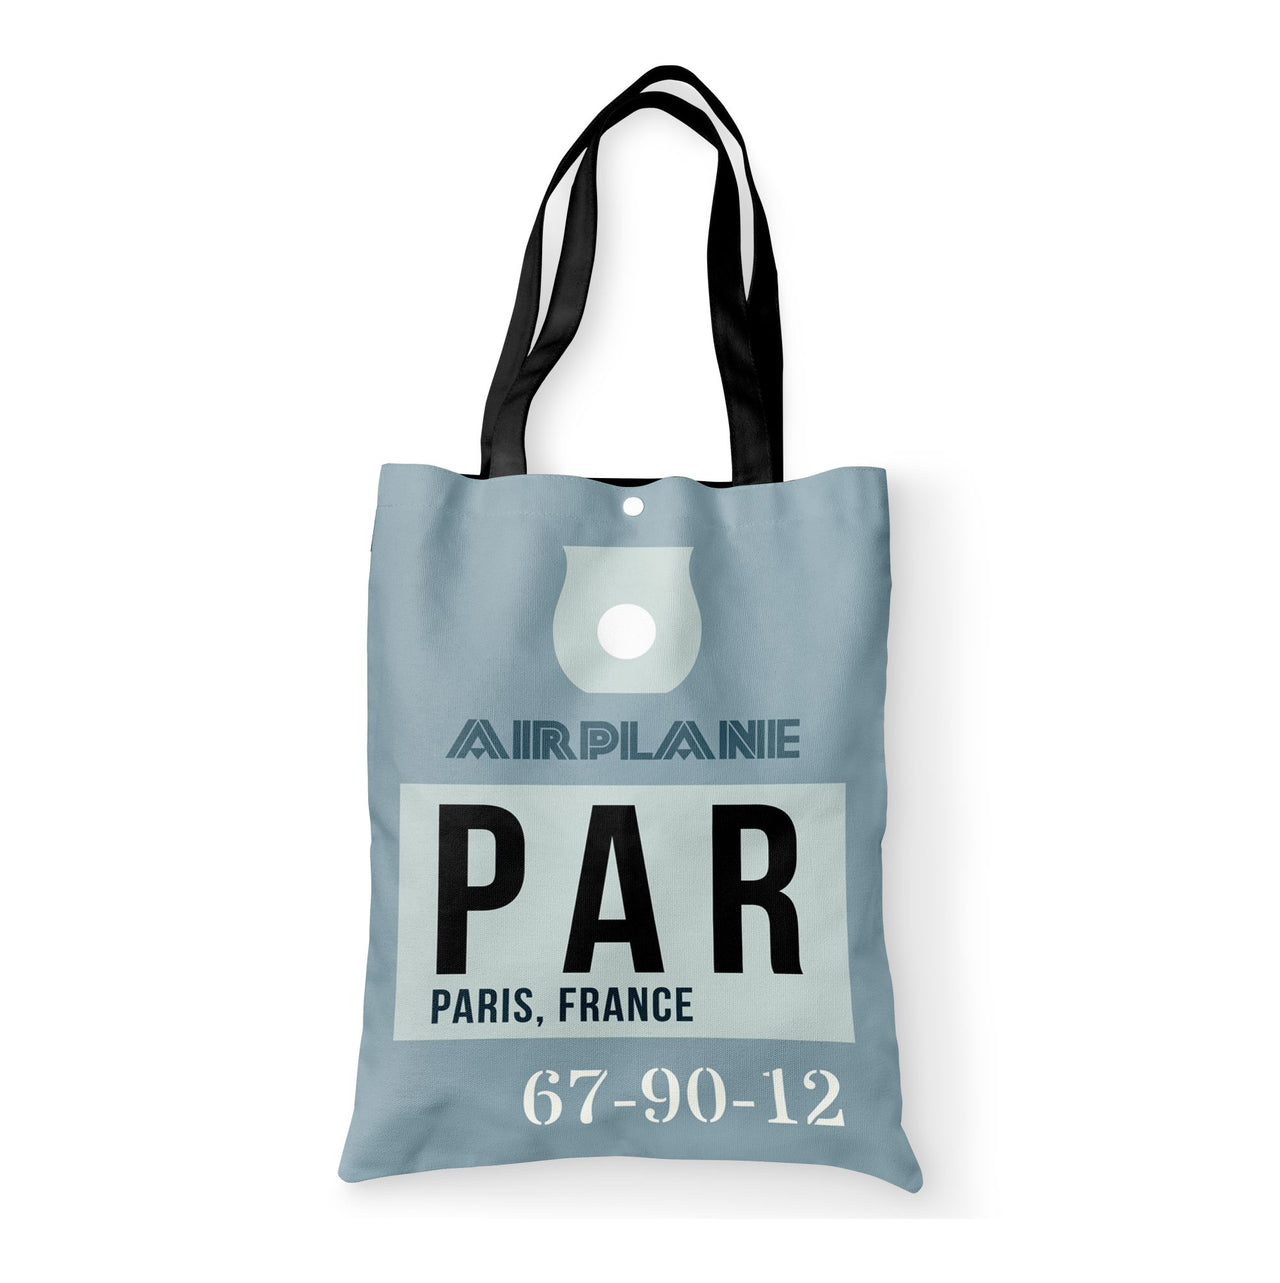 PAR - Paris France Luggage Tag Designed Tote Bags